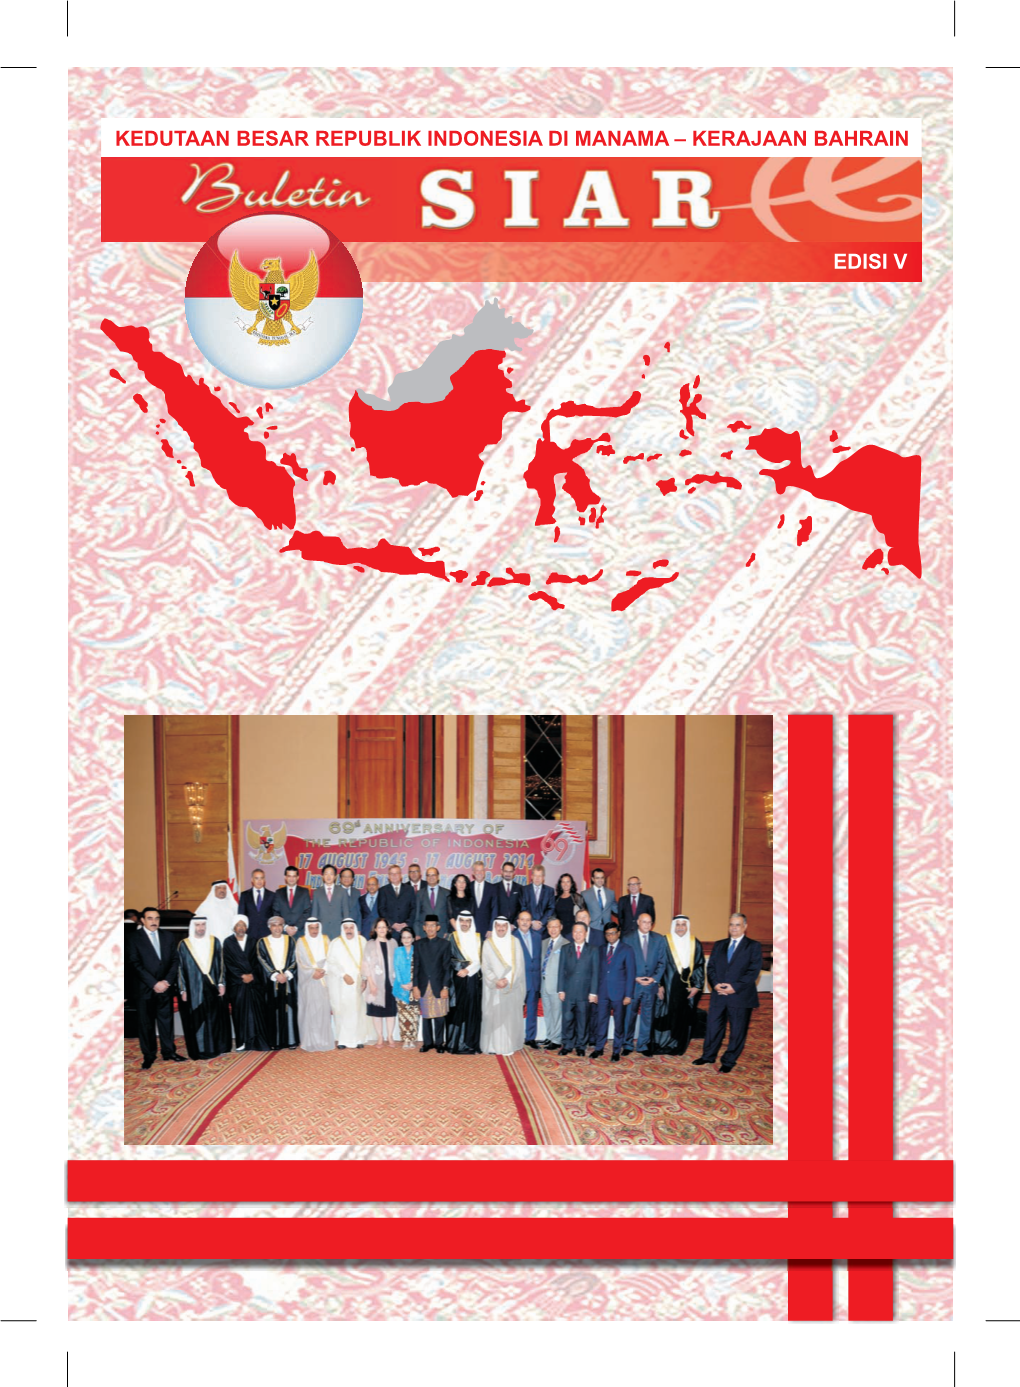 Kedutaan Besar Republik Indonesia Di Manama – Kerajaan Bahrain